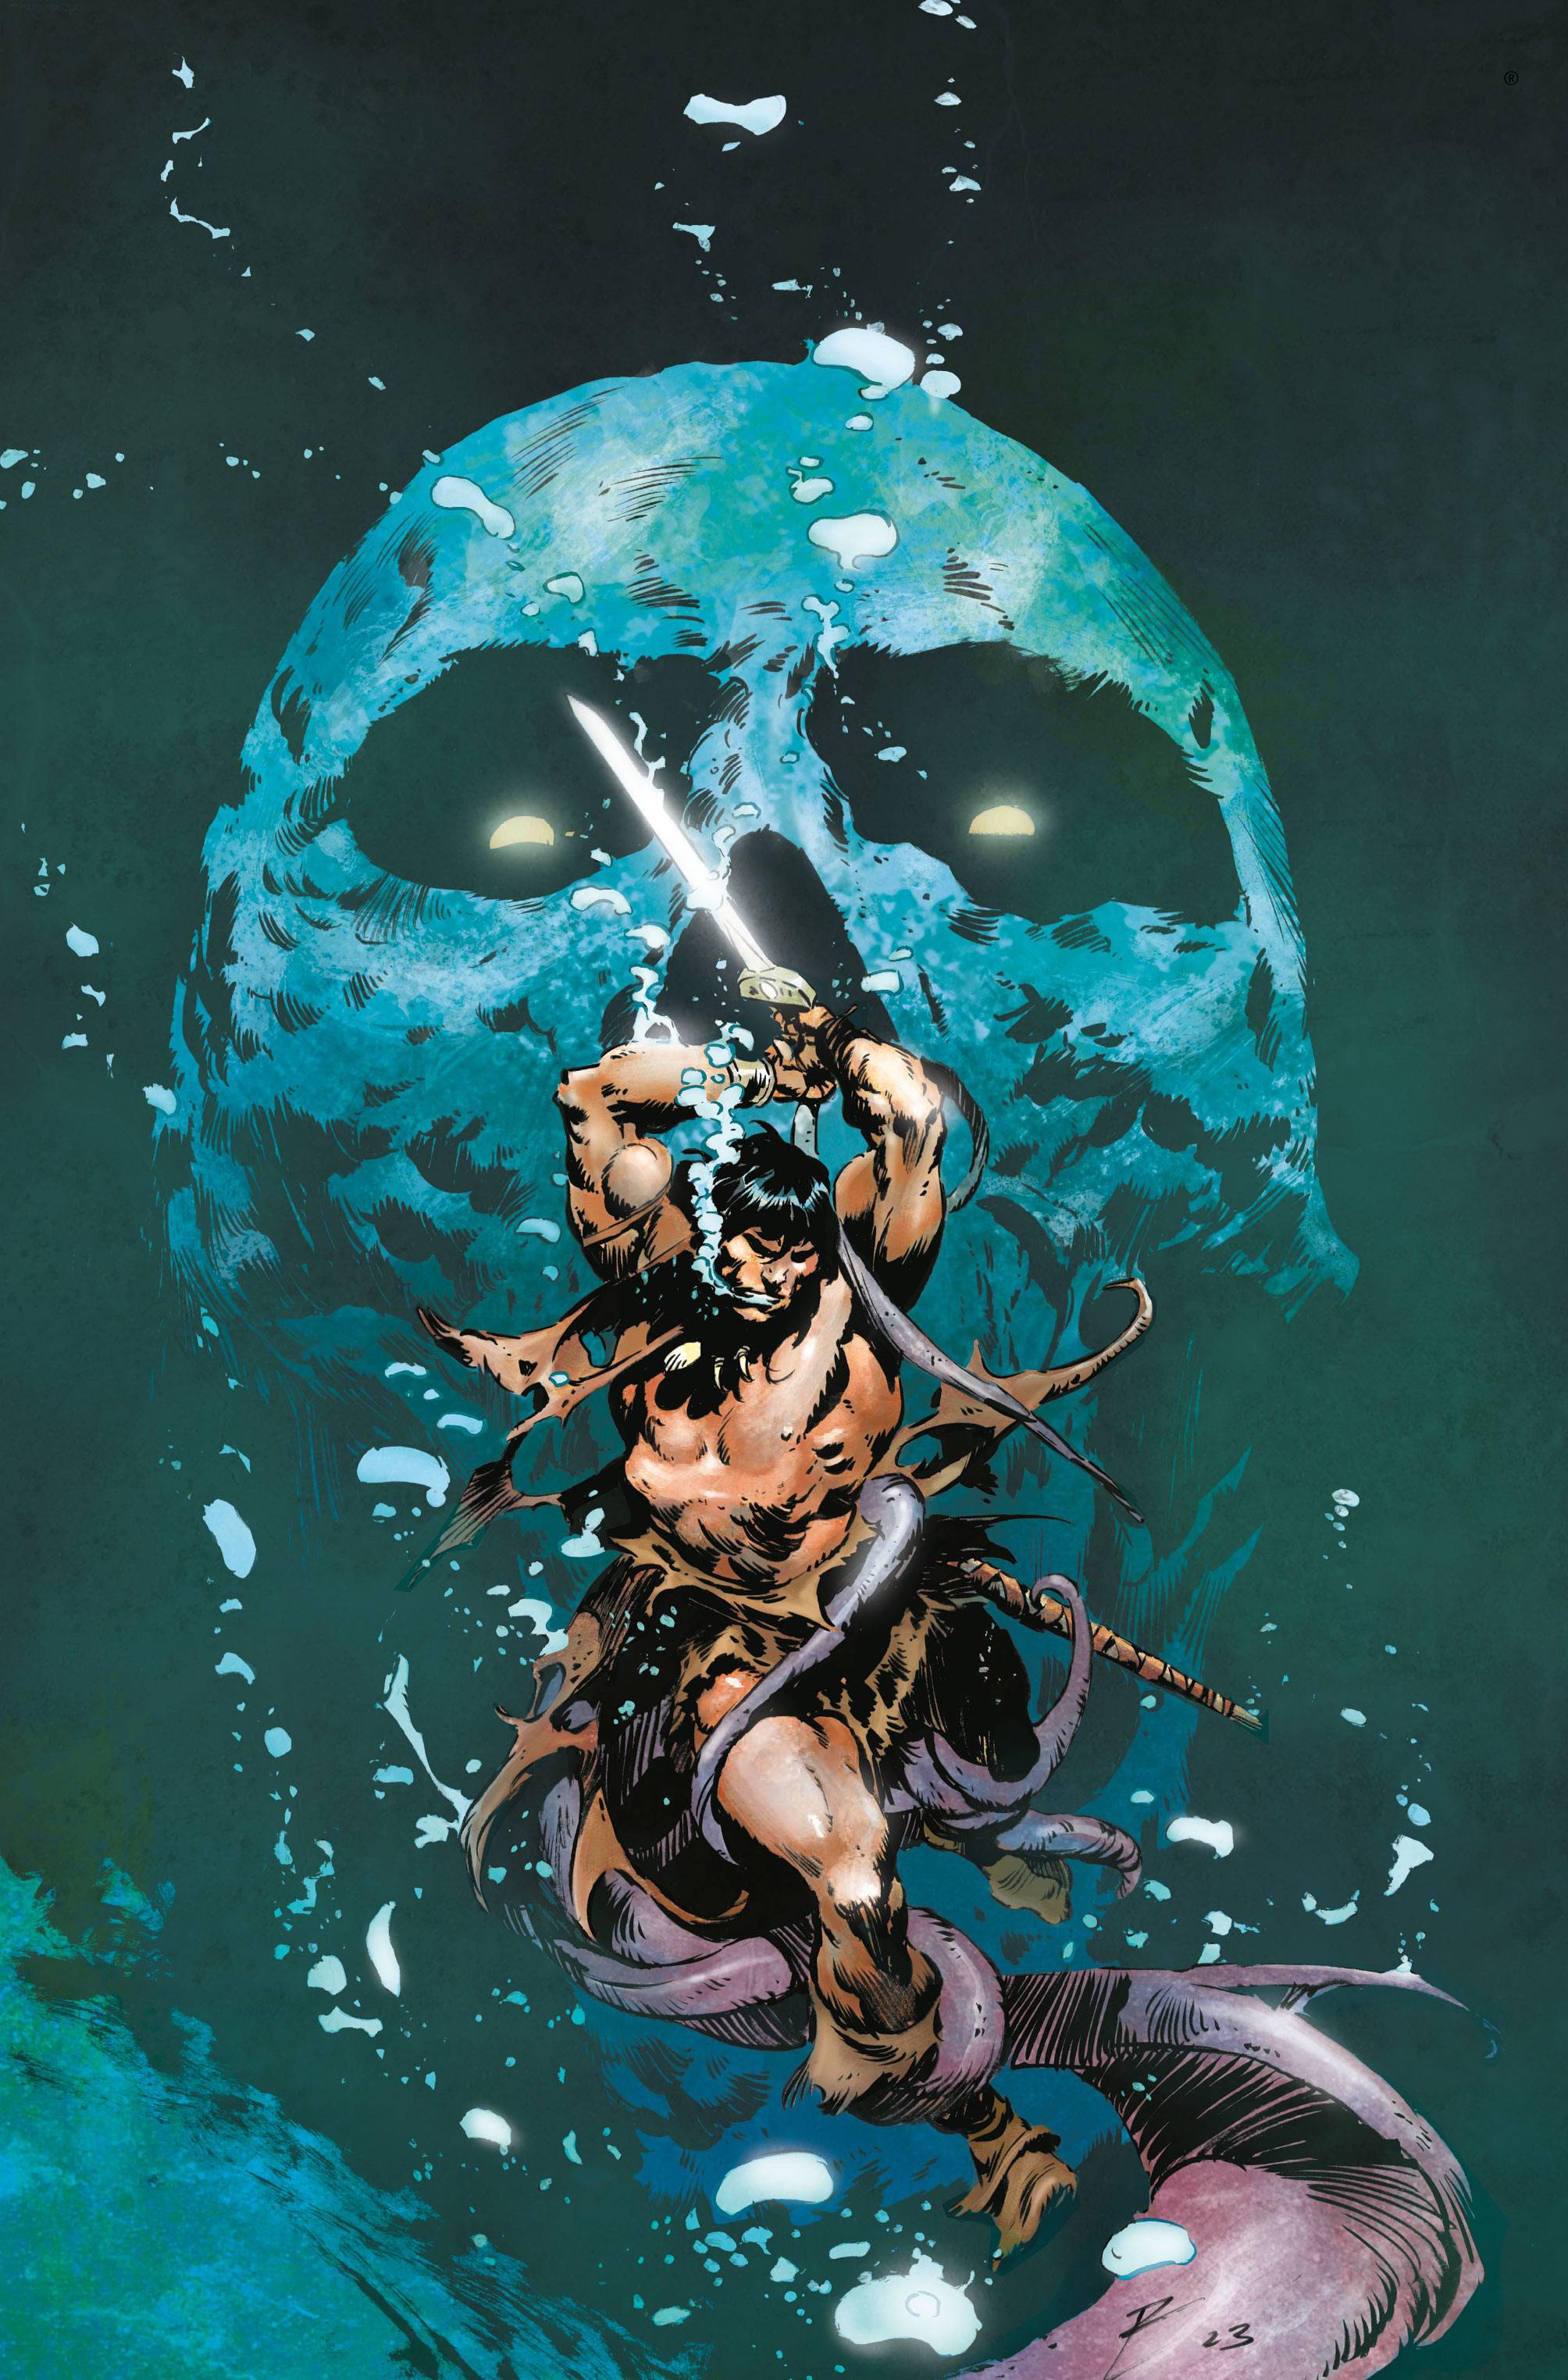 Conan the Barbarian from Titan Comics